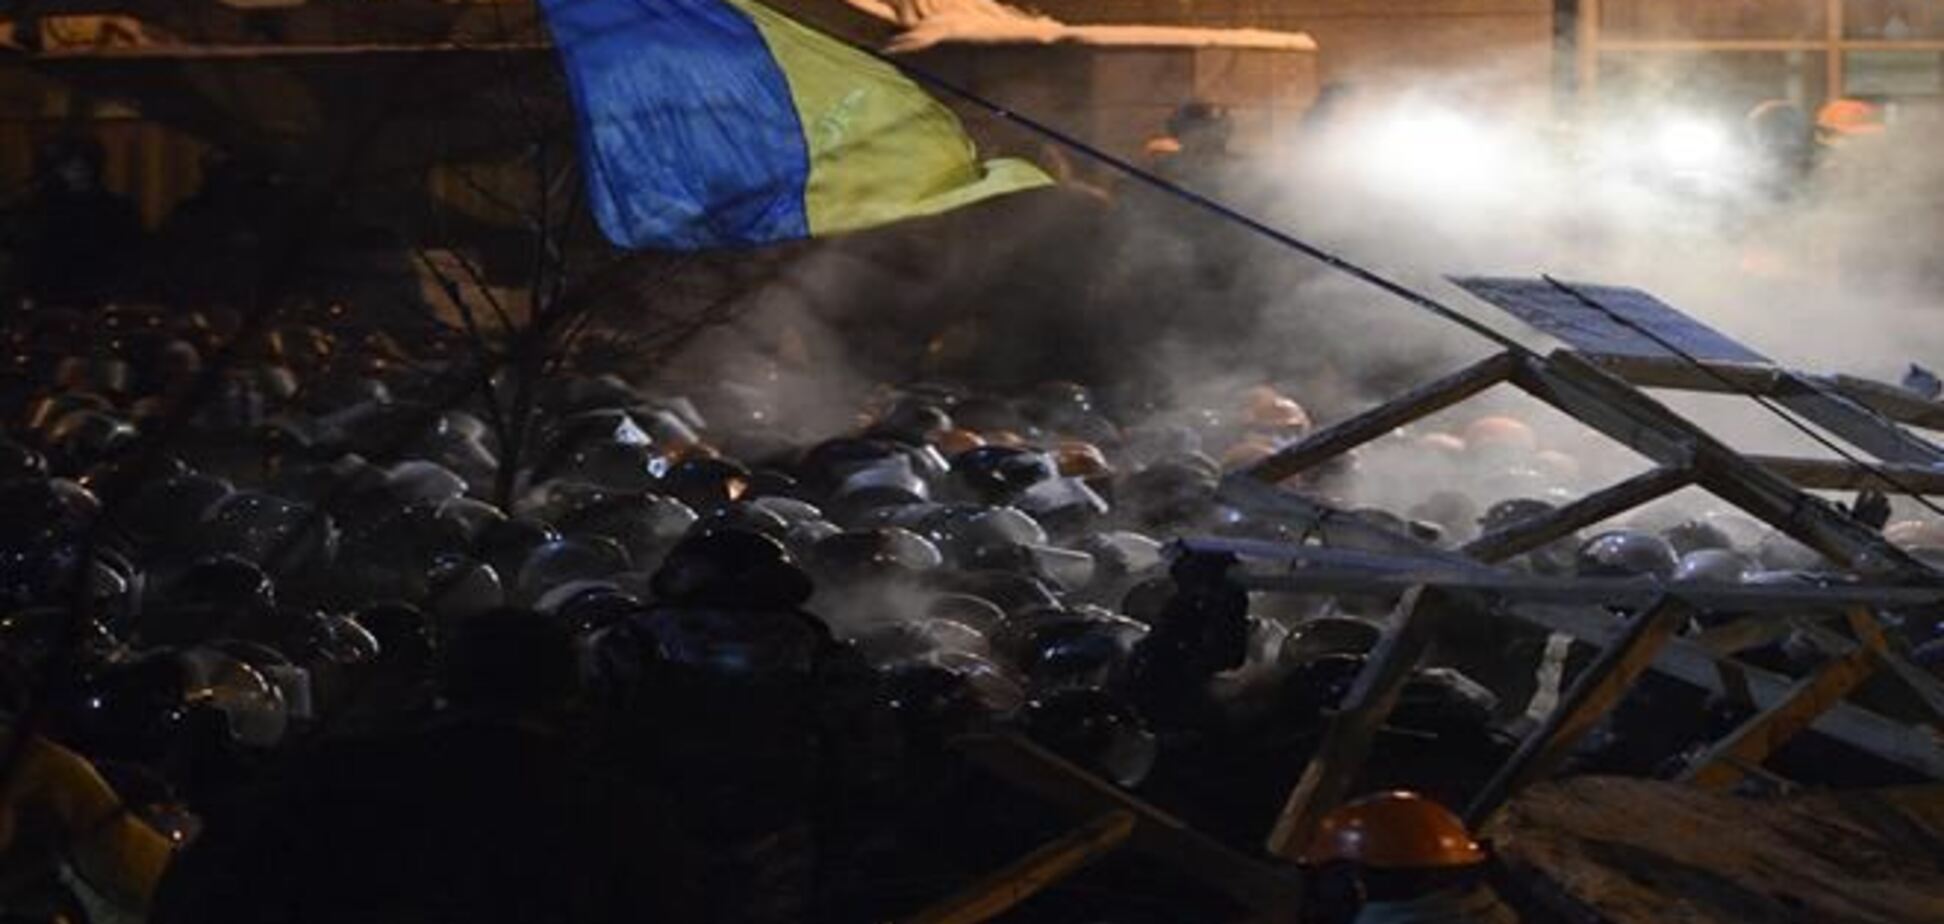  Украинцы против разгона Майдана и введения чрезвычайного положения - Опрос